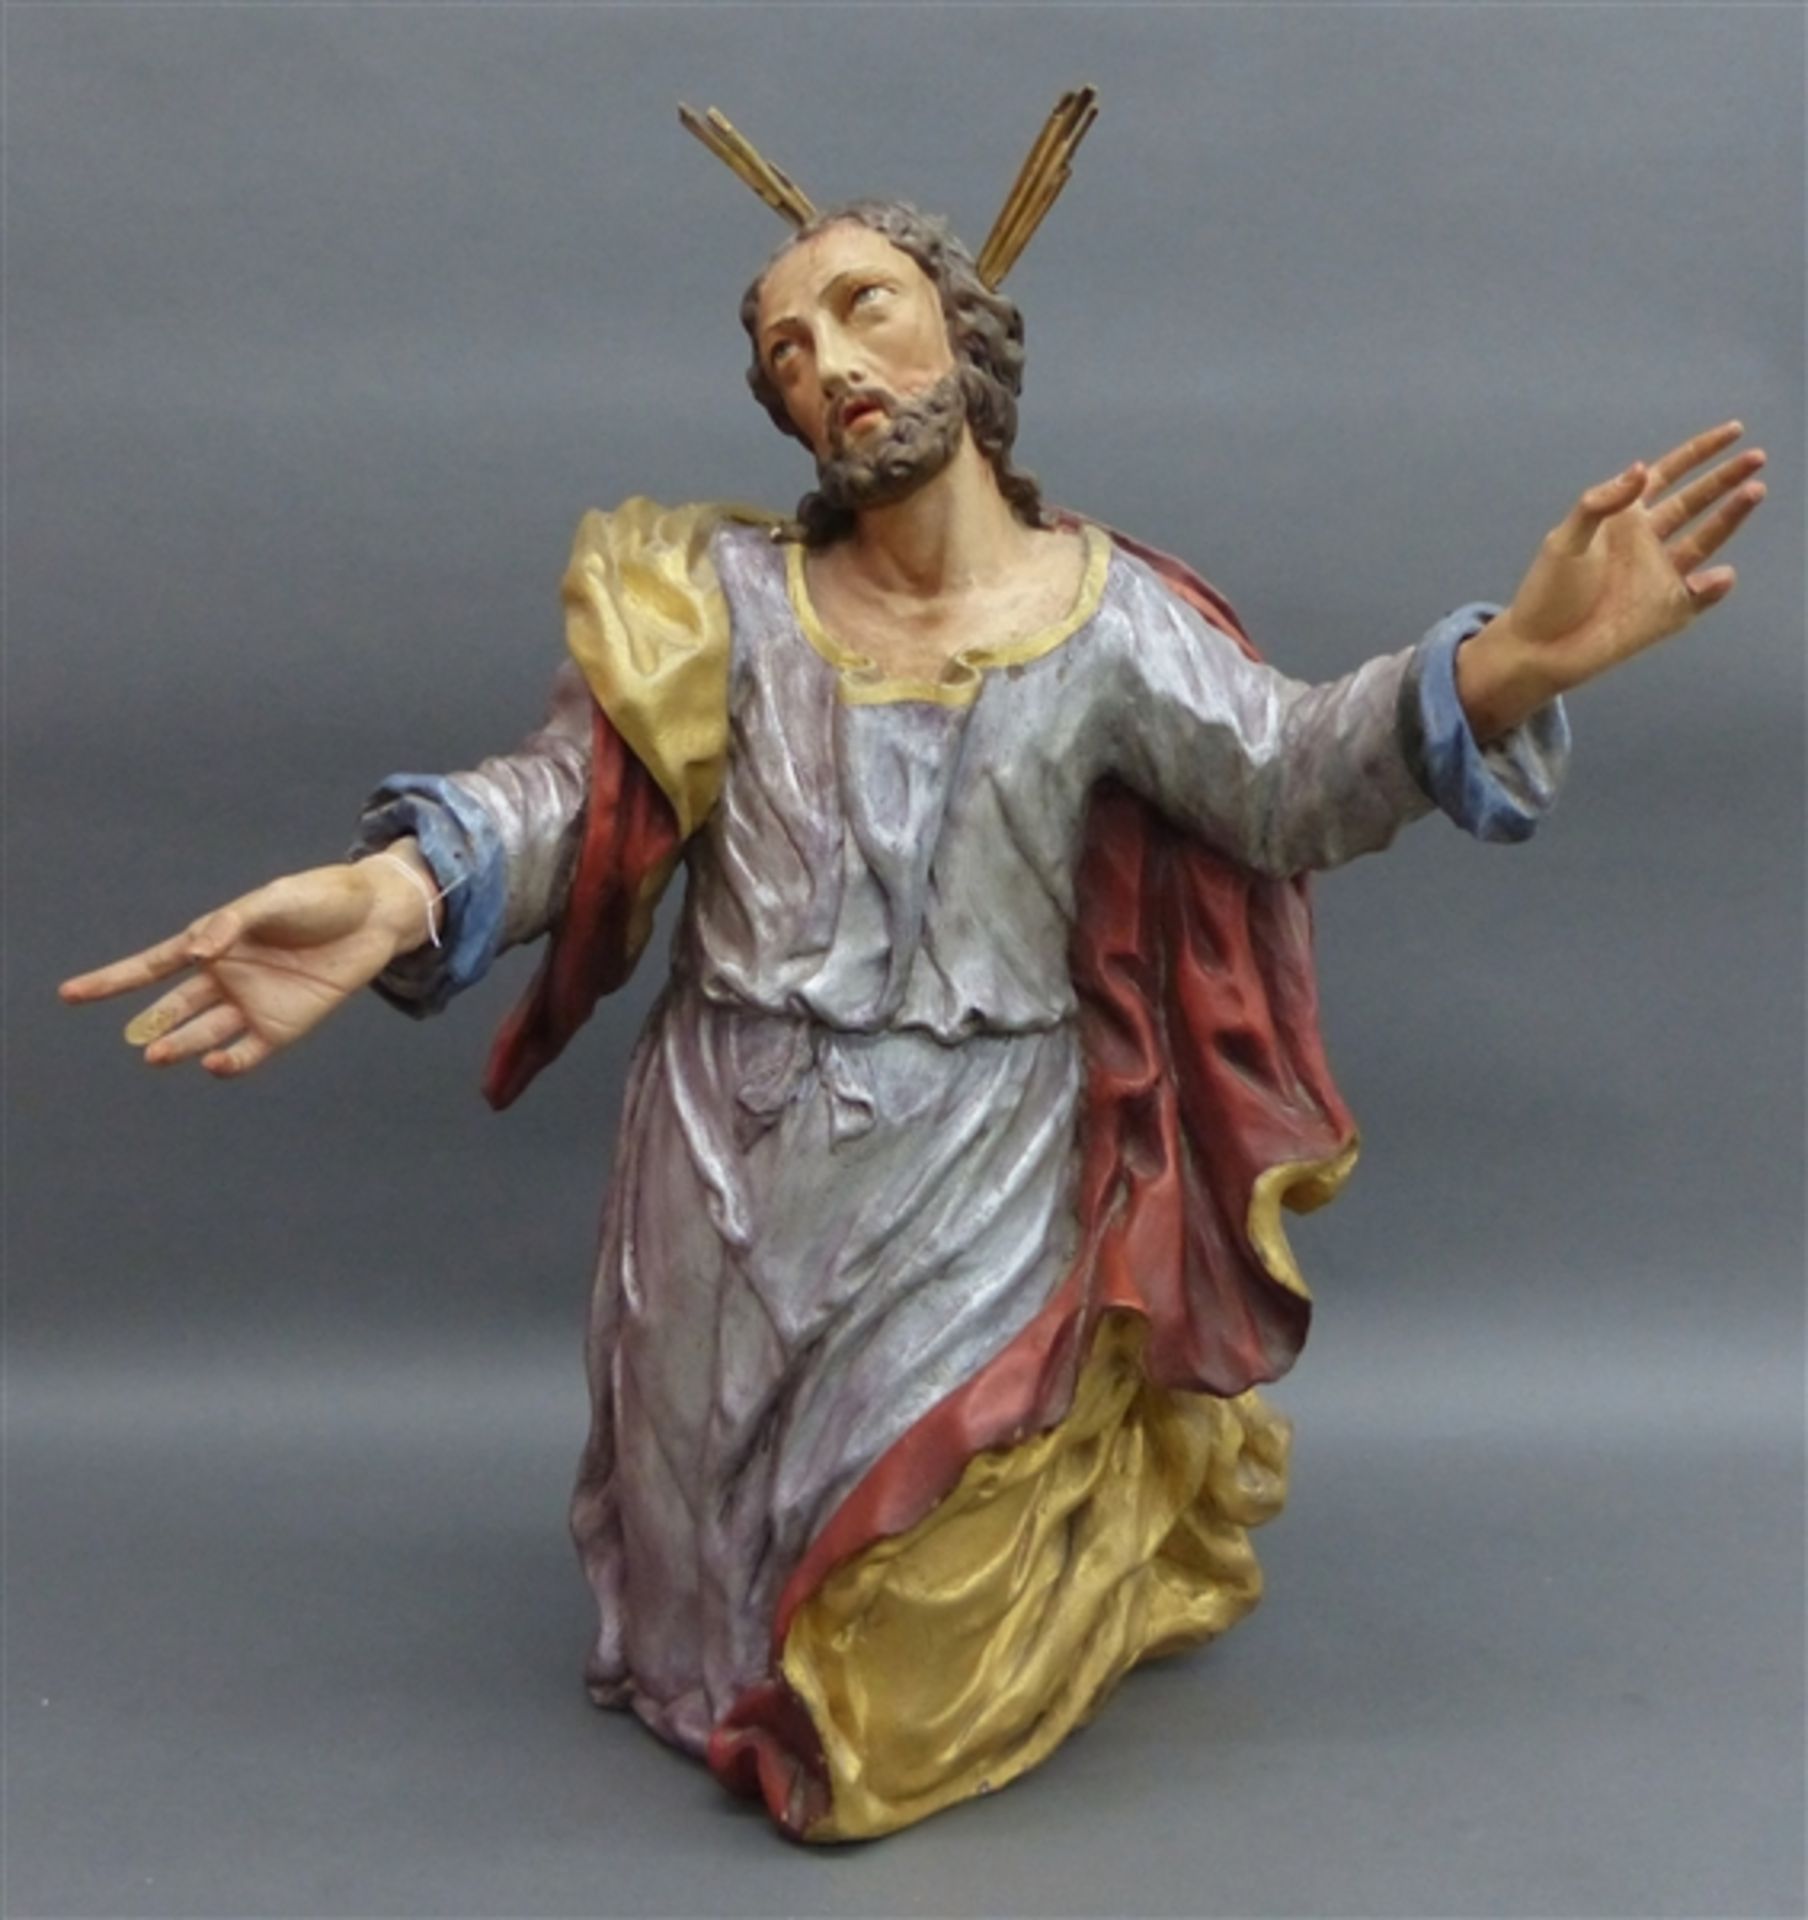 Holzskulptur, 18. Jh. Barock, kniender Jesus am Ölberg, gefasst, kleine Teile fehlen, Fassung